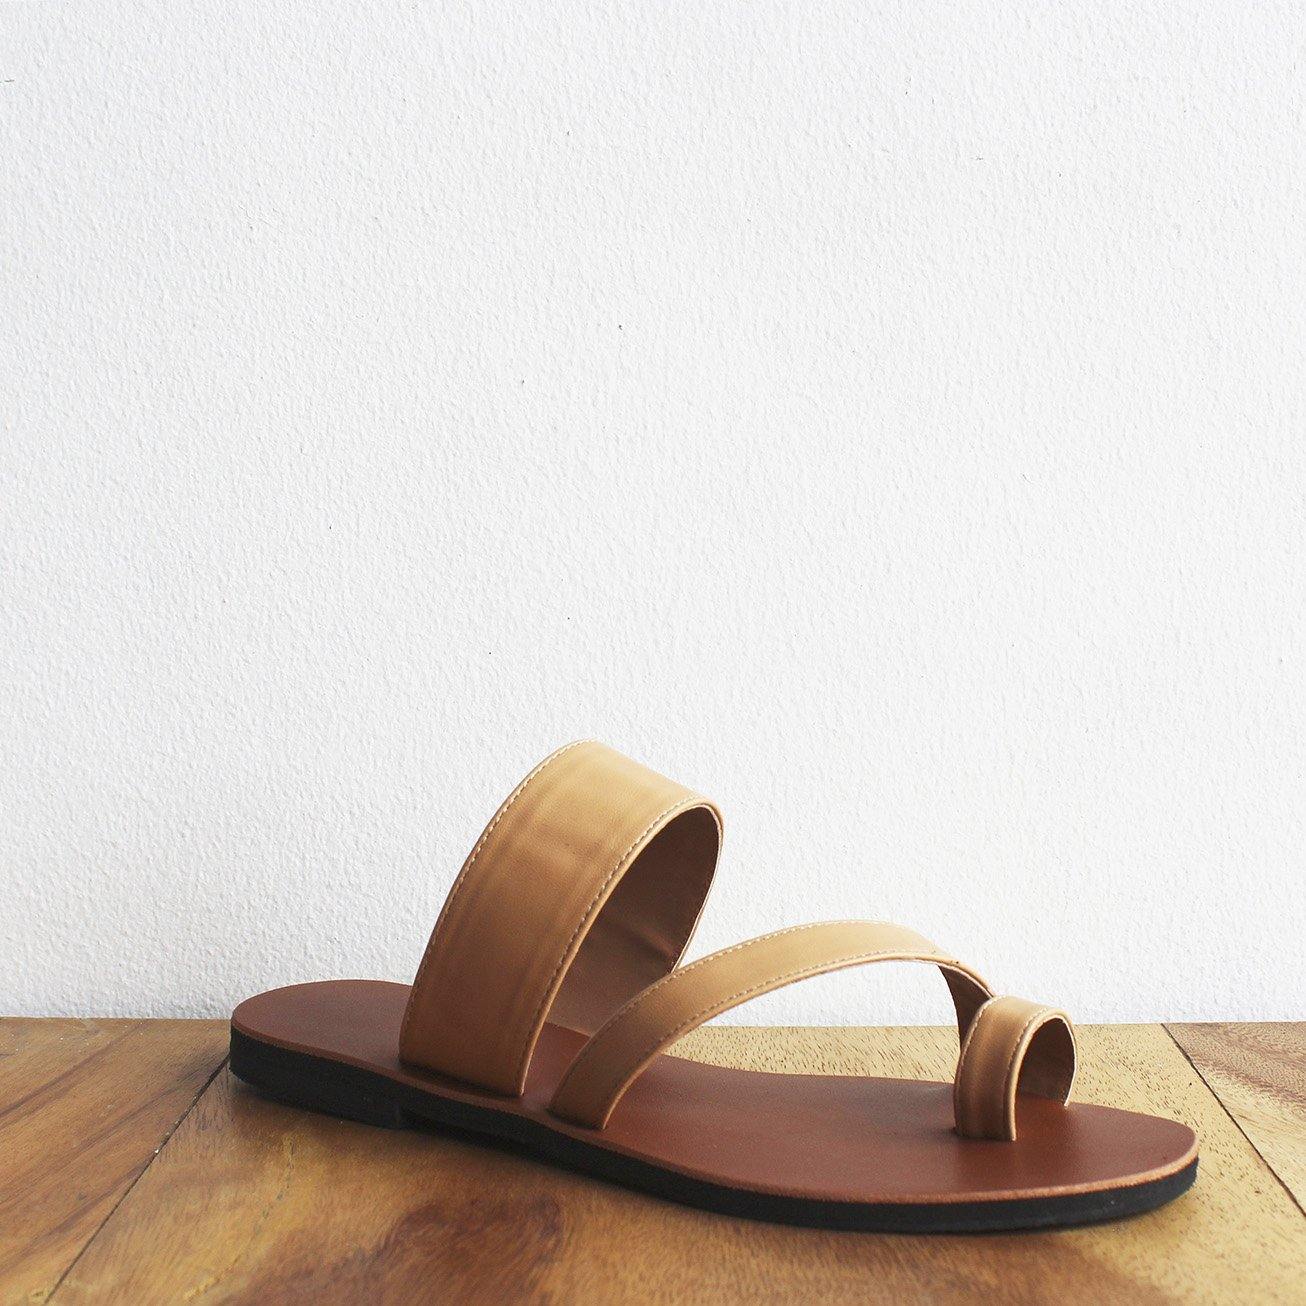 Toe-Strap Sandals (5 pairs per set) - Risque Manufacturing